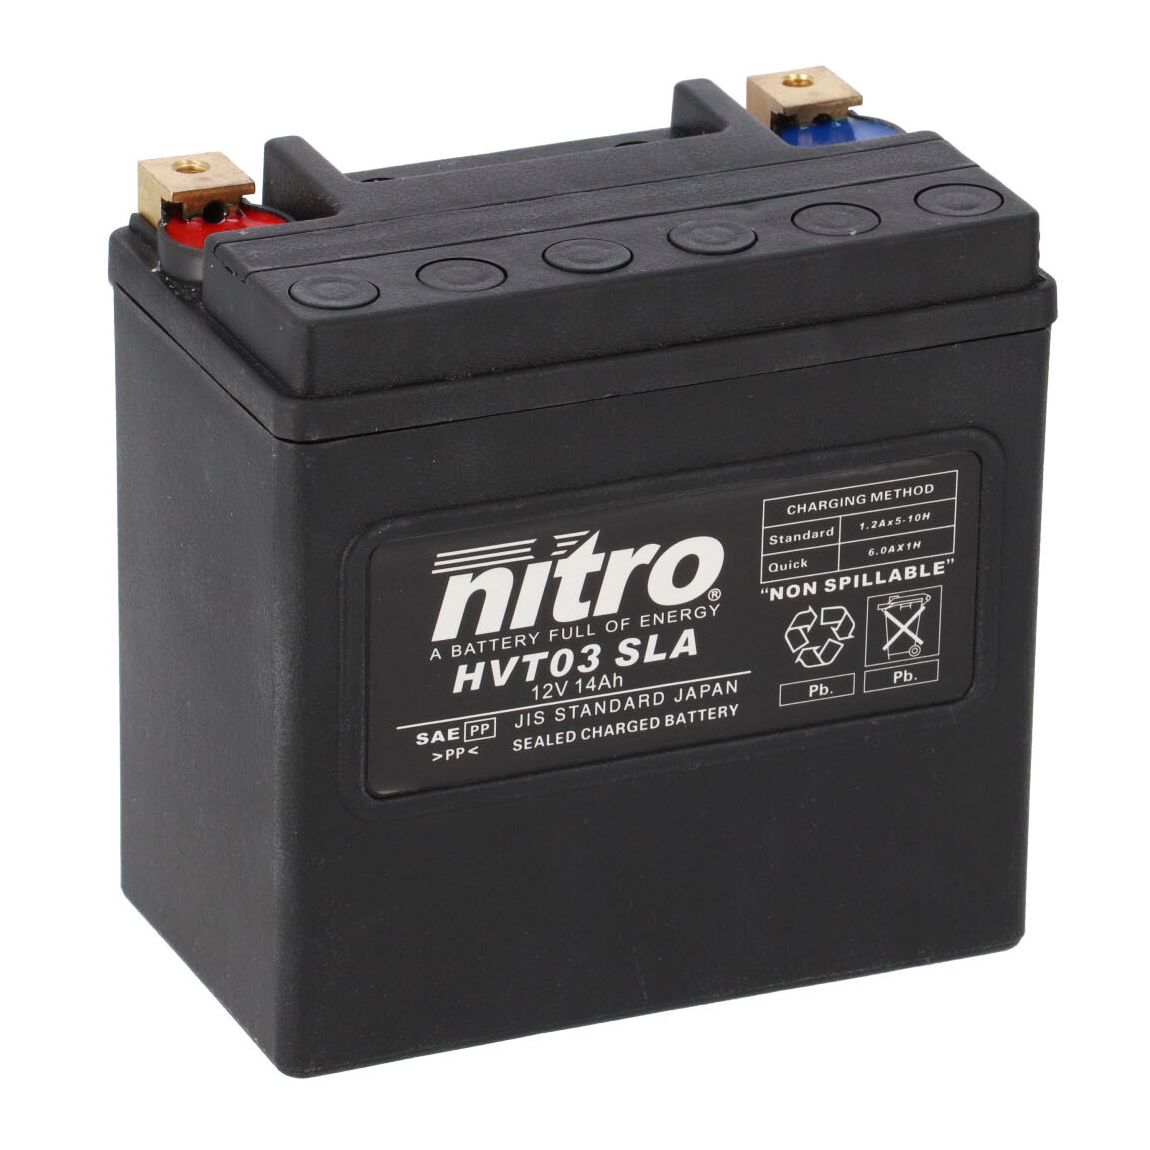 Batterie Nitro HVT 03 SLA FERME TYPE ACIDE SANS ENTRETIEN/PRÊTE À L'EMPLOI